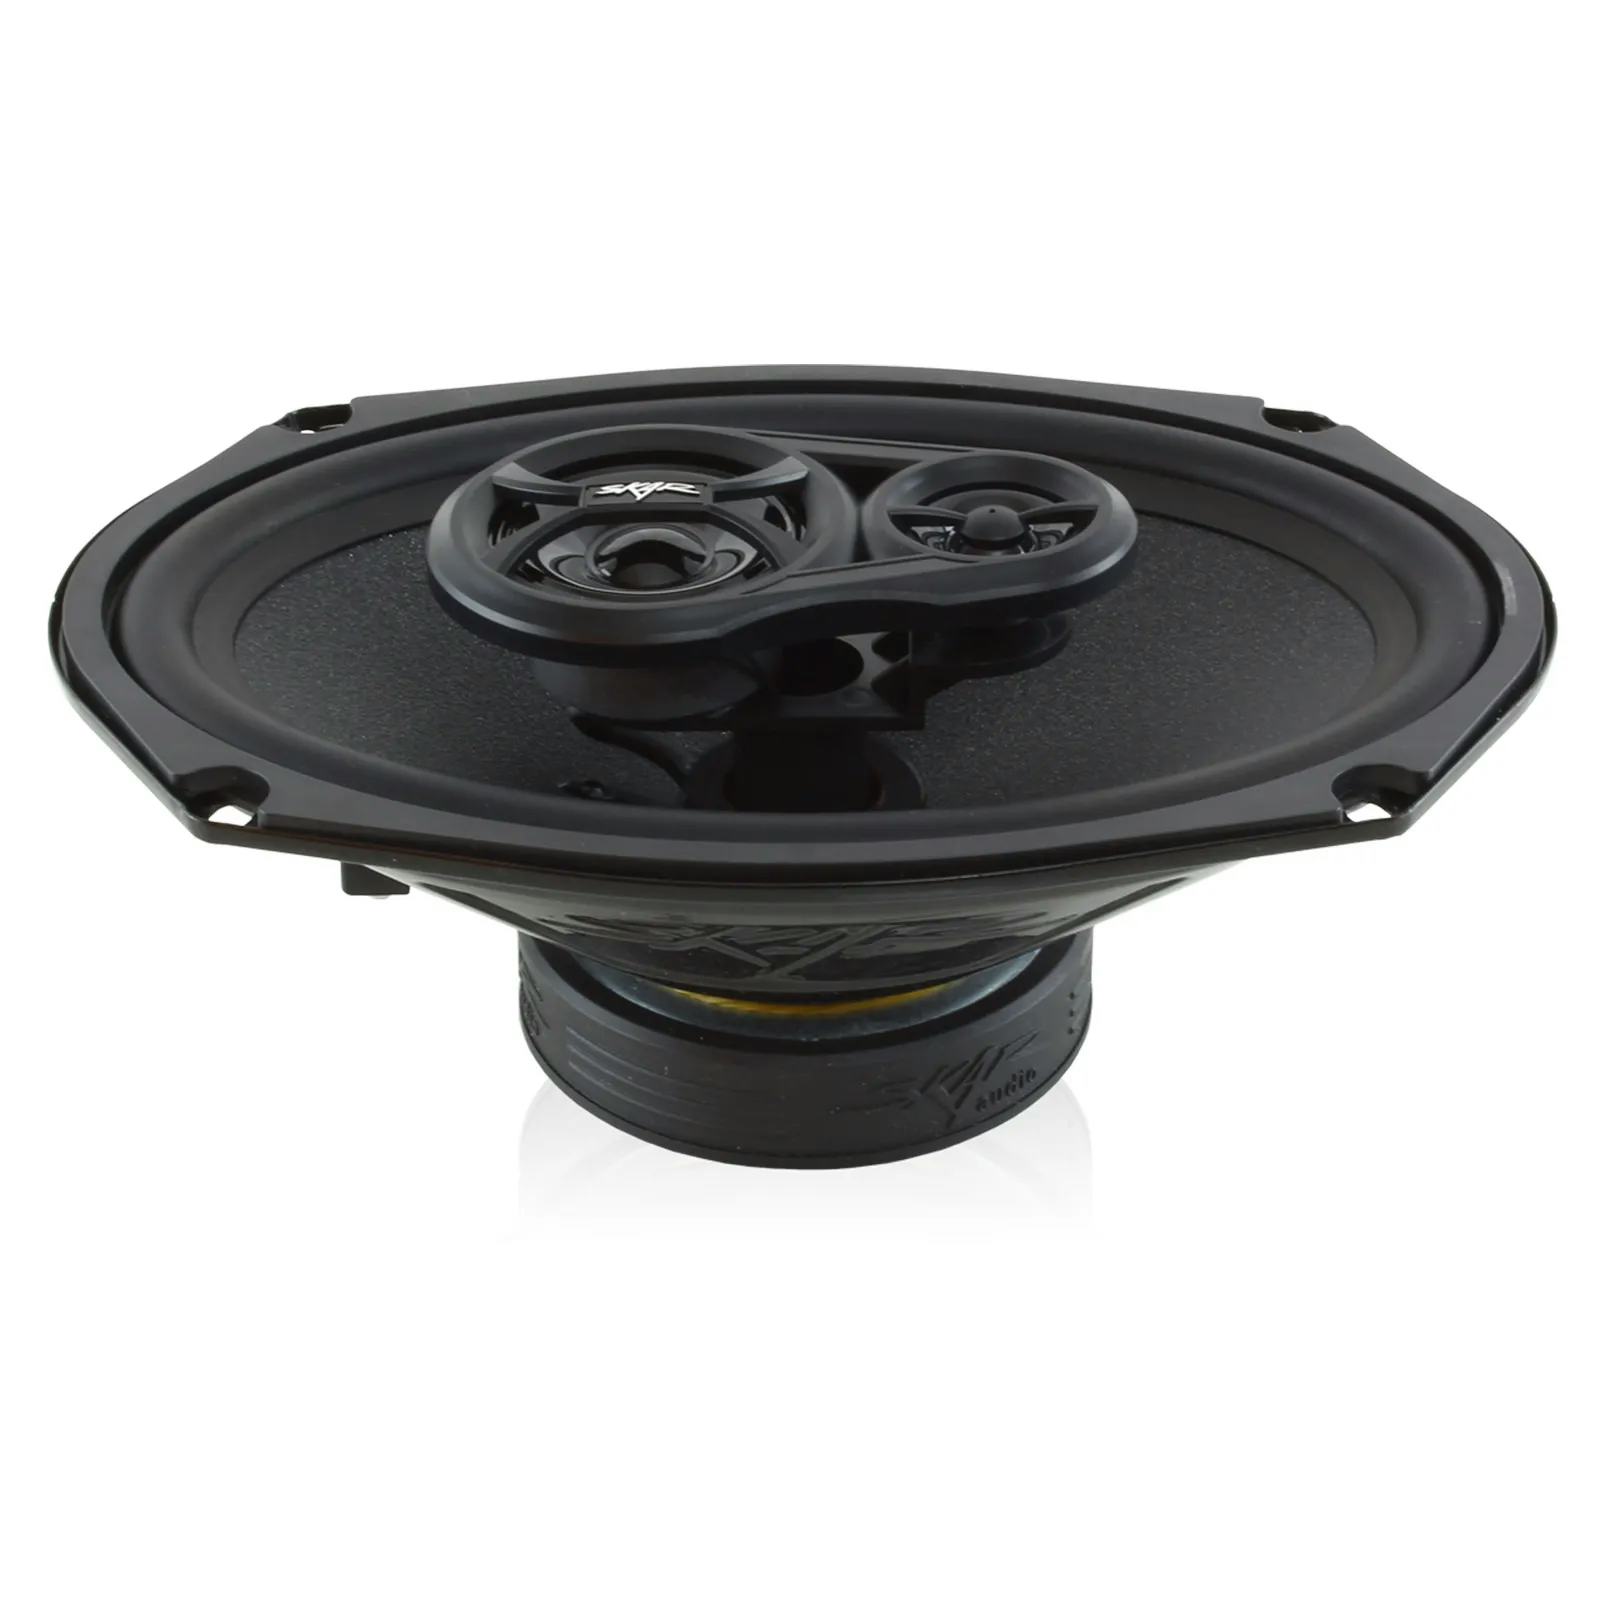 RPX69 | 6" x 9" 270 Watt Coaxial Car Speakers - Pair #2